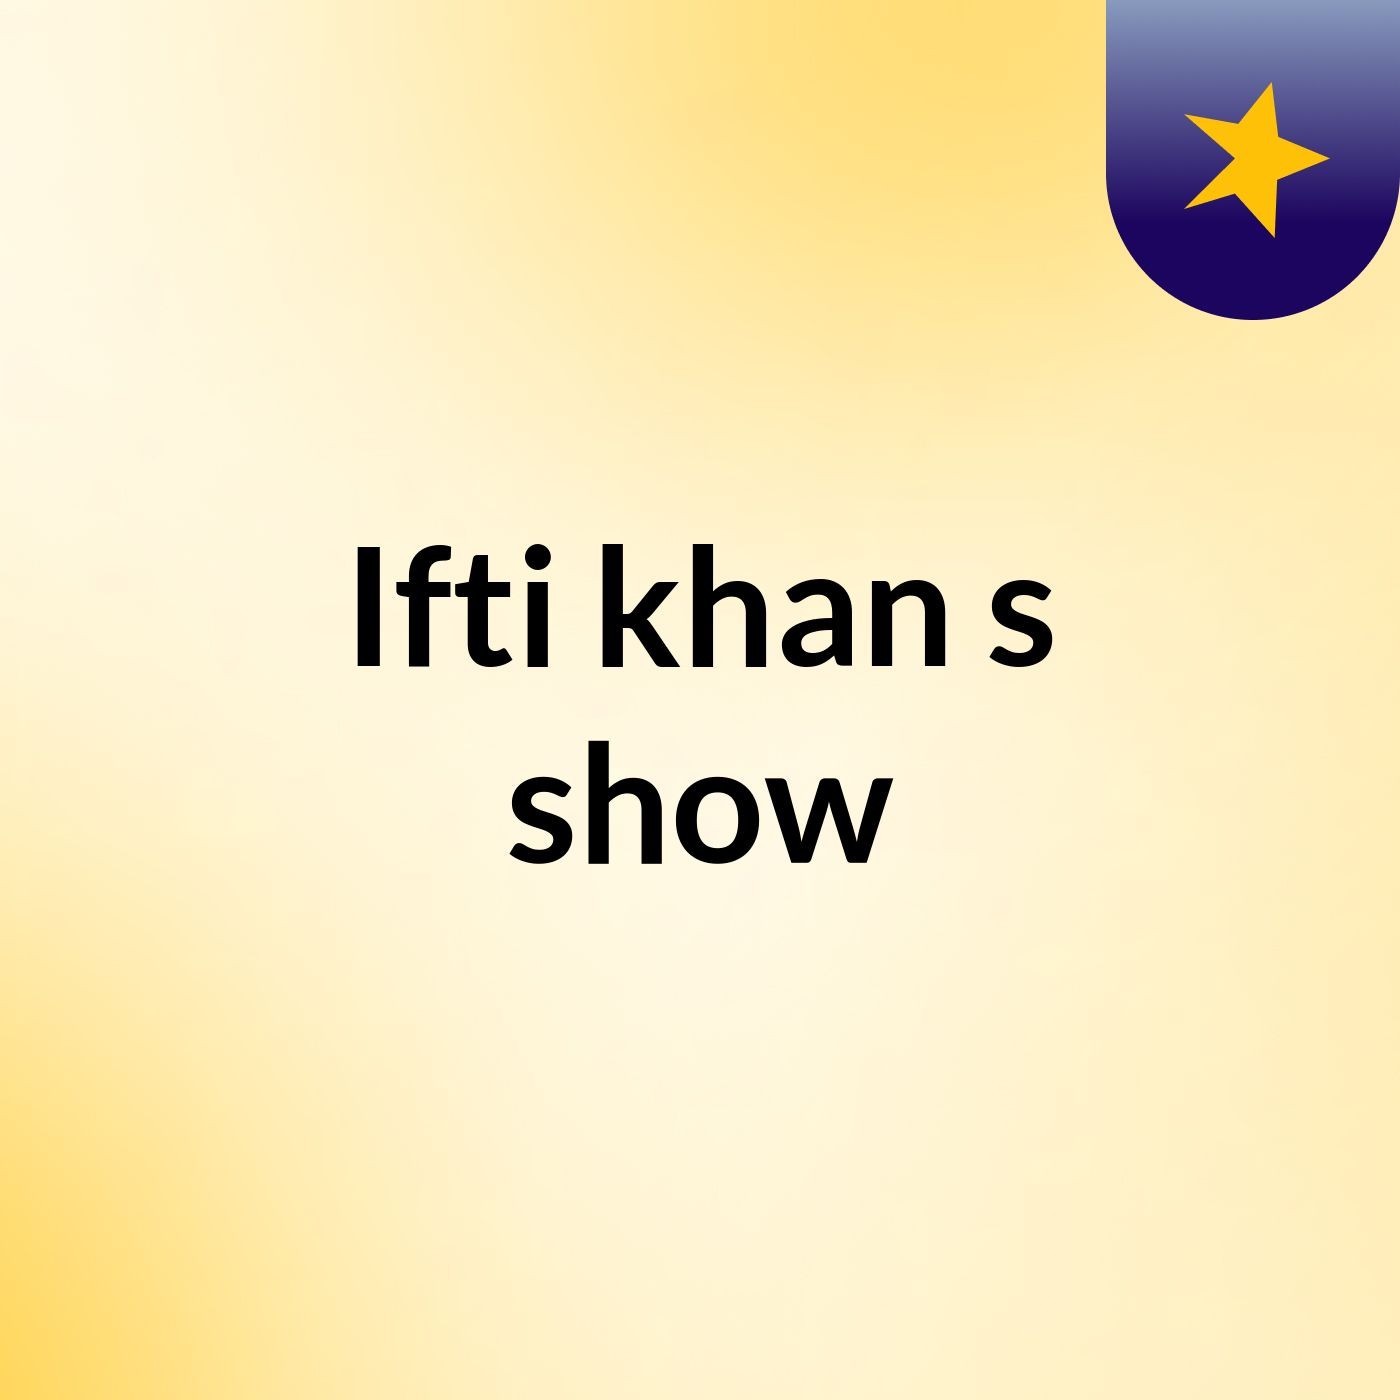 Ifti khan's show